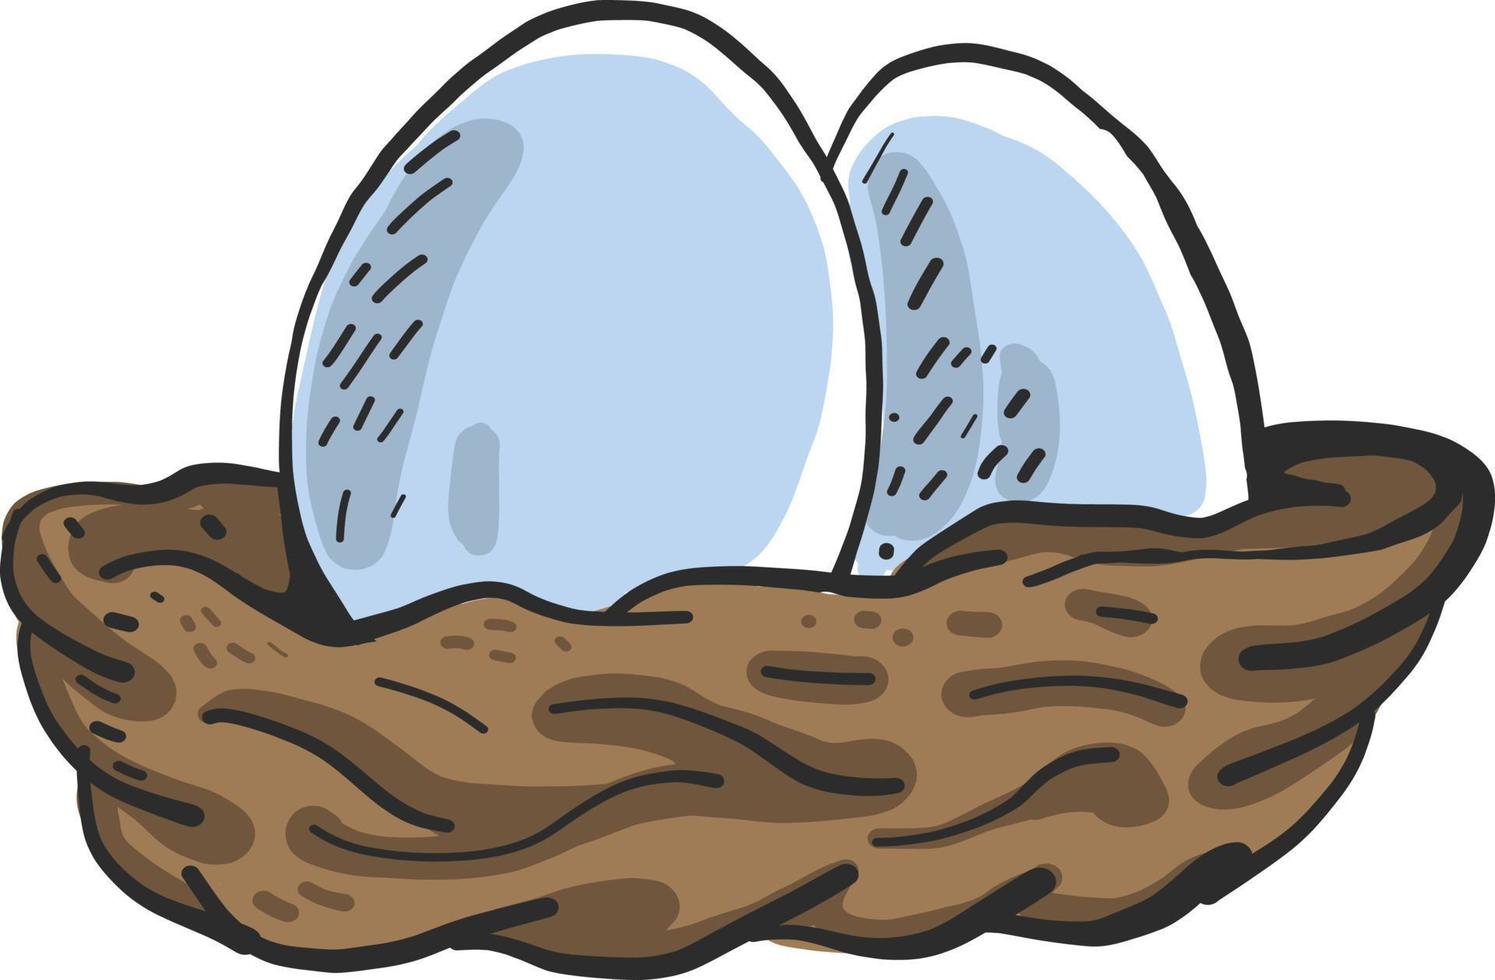 Eggs in basket, illustration, vector on white background